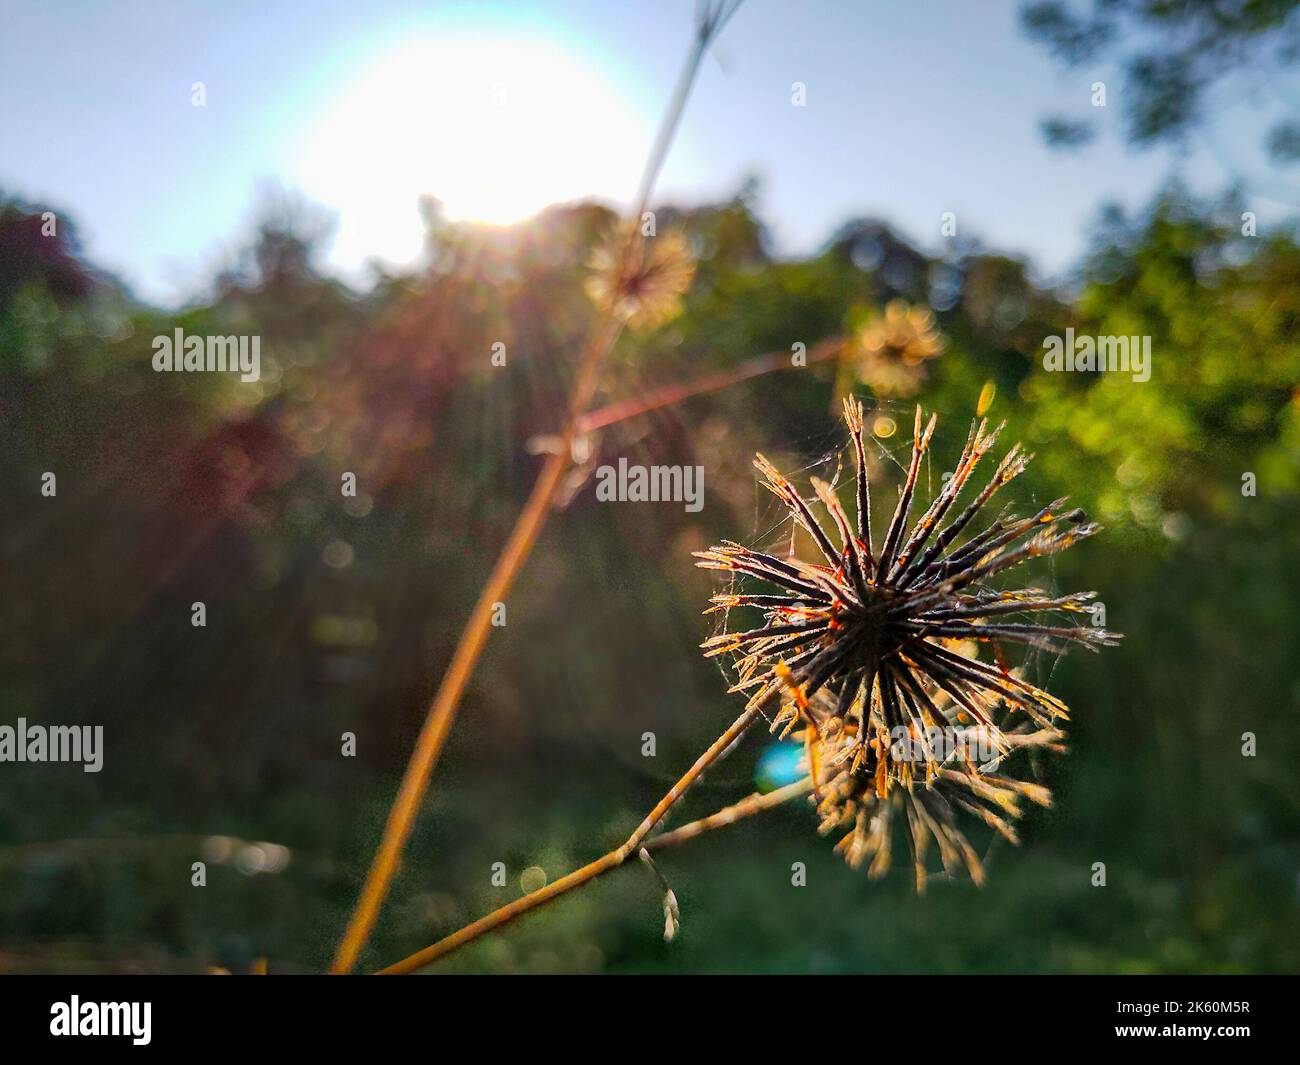 Bidens pilosa (mendiant-tiques poilues) boutons de fleurs sauvages dans les jungles d'Uttarakhand Inde. Banque D'Images